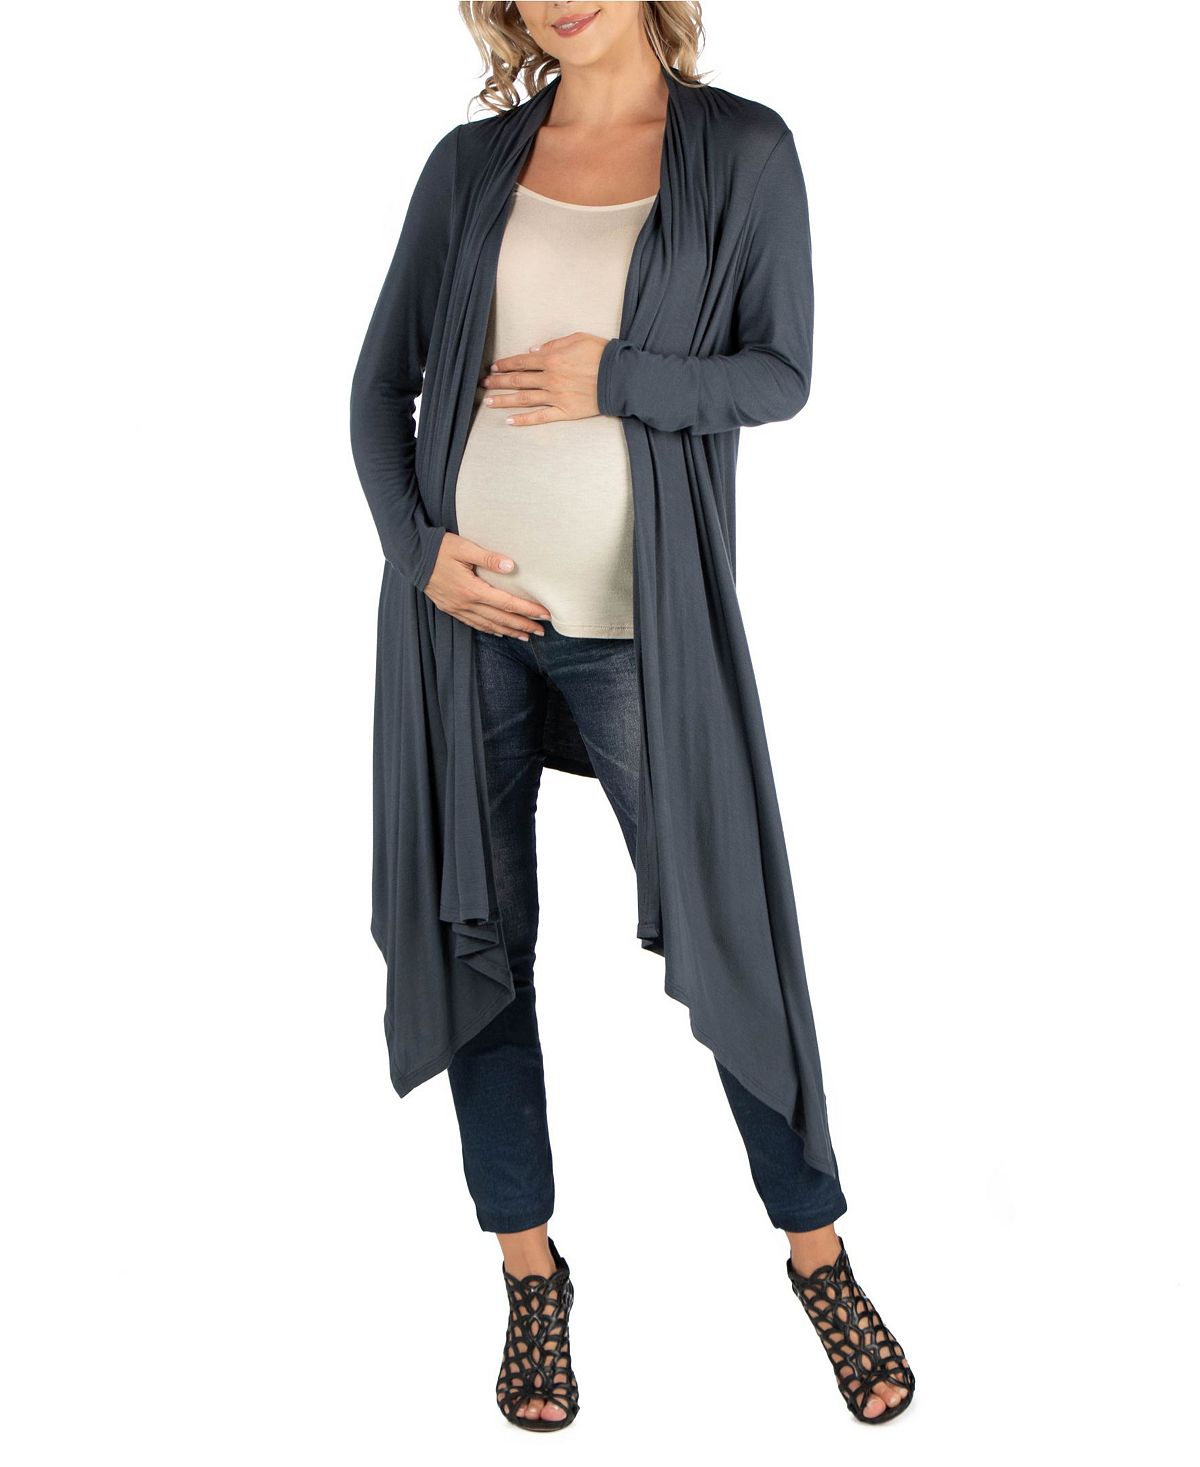 Открытый кардиган для беременных длиной до колена с длинными рукавами 24seven Comfort Apparel, серый